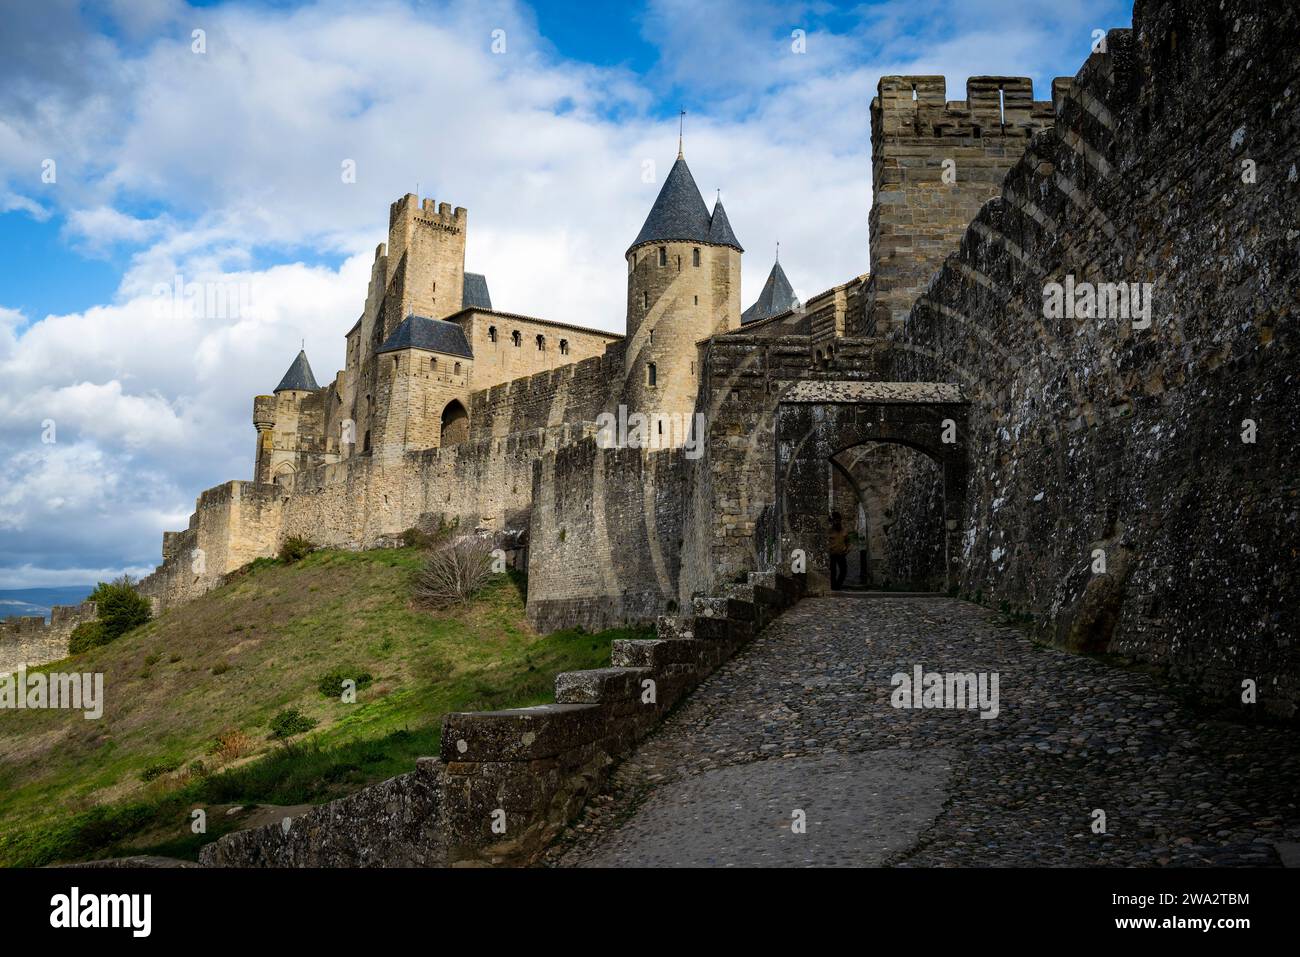 La Cité, cittadella medievale con numerose torri di guardia e fortificazioni a doppia parete. Le prime mura furono costruite in epoca gallo-romana, con importanti addi Foto Stock